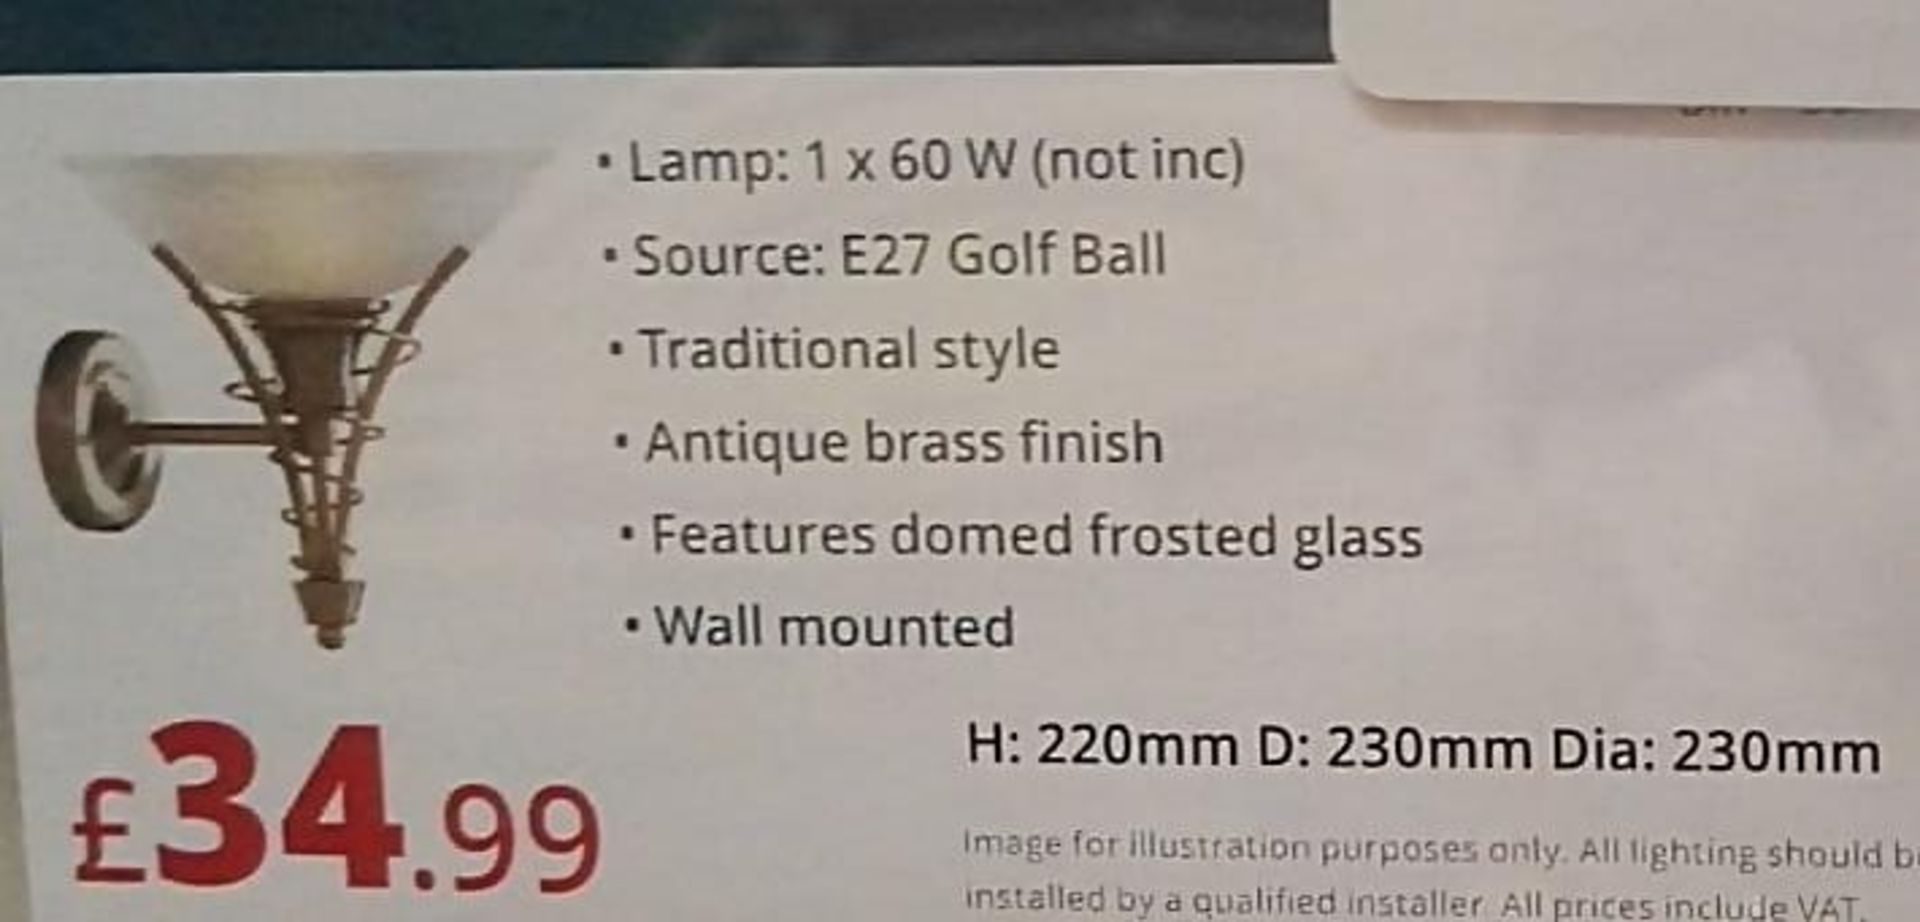 1 x LINEA TWIST Single Wall Light Fitting - Ex-Display Item, Mounted On Backboard - CL298 - Ref: J33 - Bild 2 aus 3